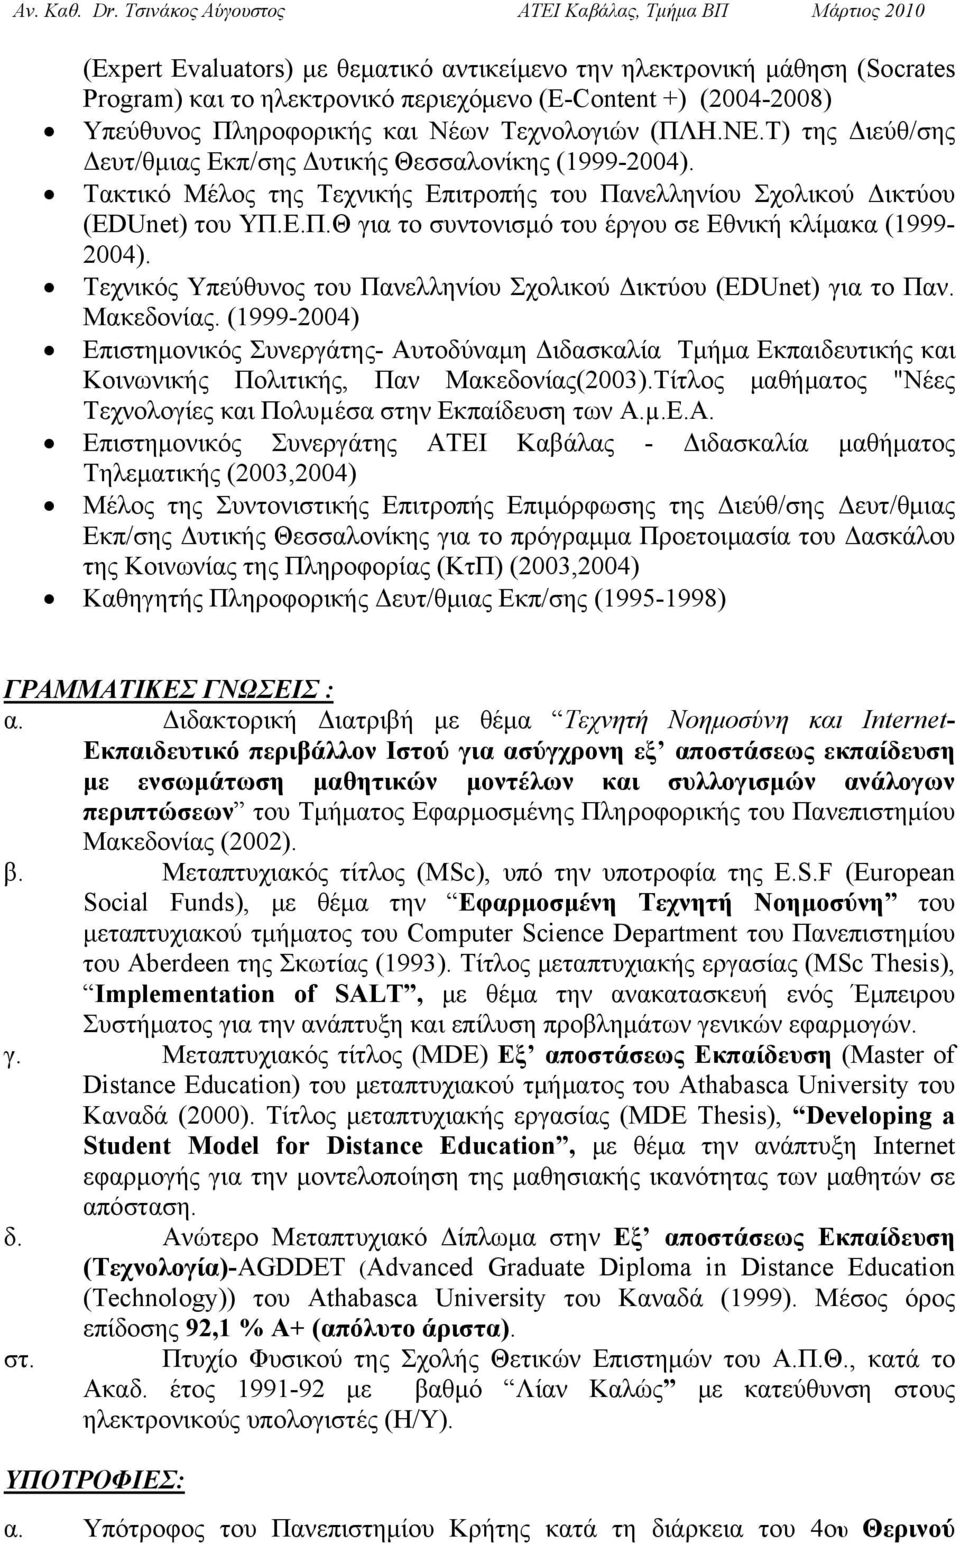 Τεχνικός Υπεύθυνος του Πανελληνίου Σχολικού Δικτύου (EDUnet) για το Παν. Μακεδονίας.